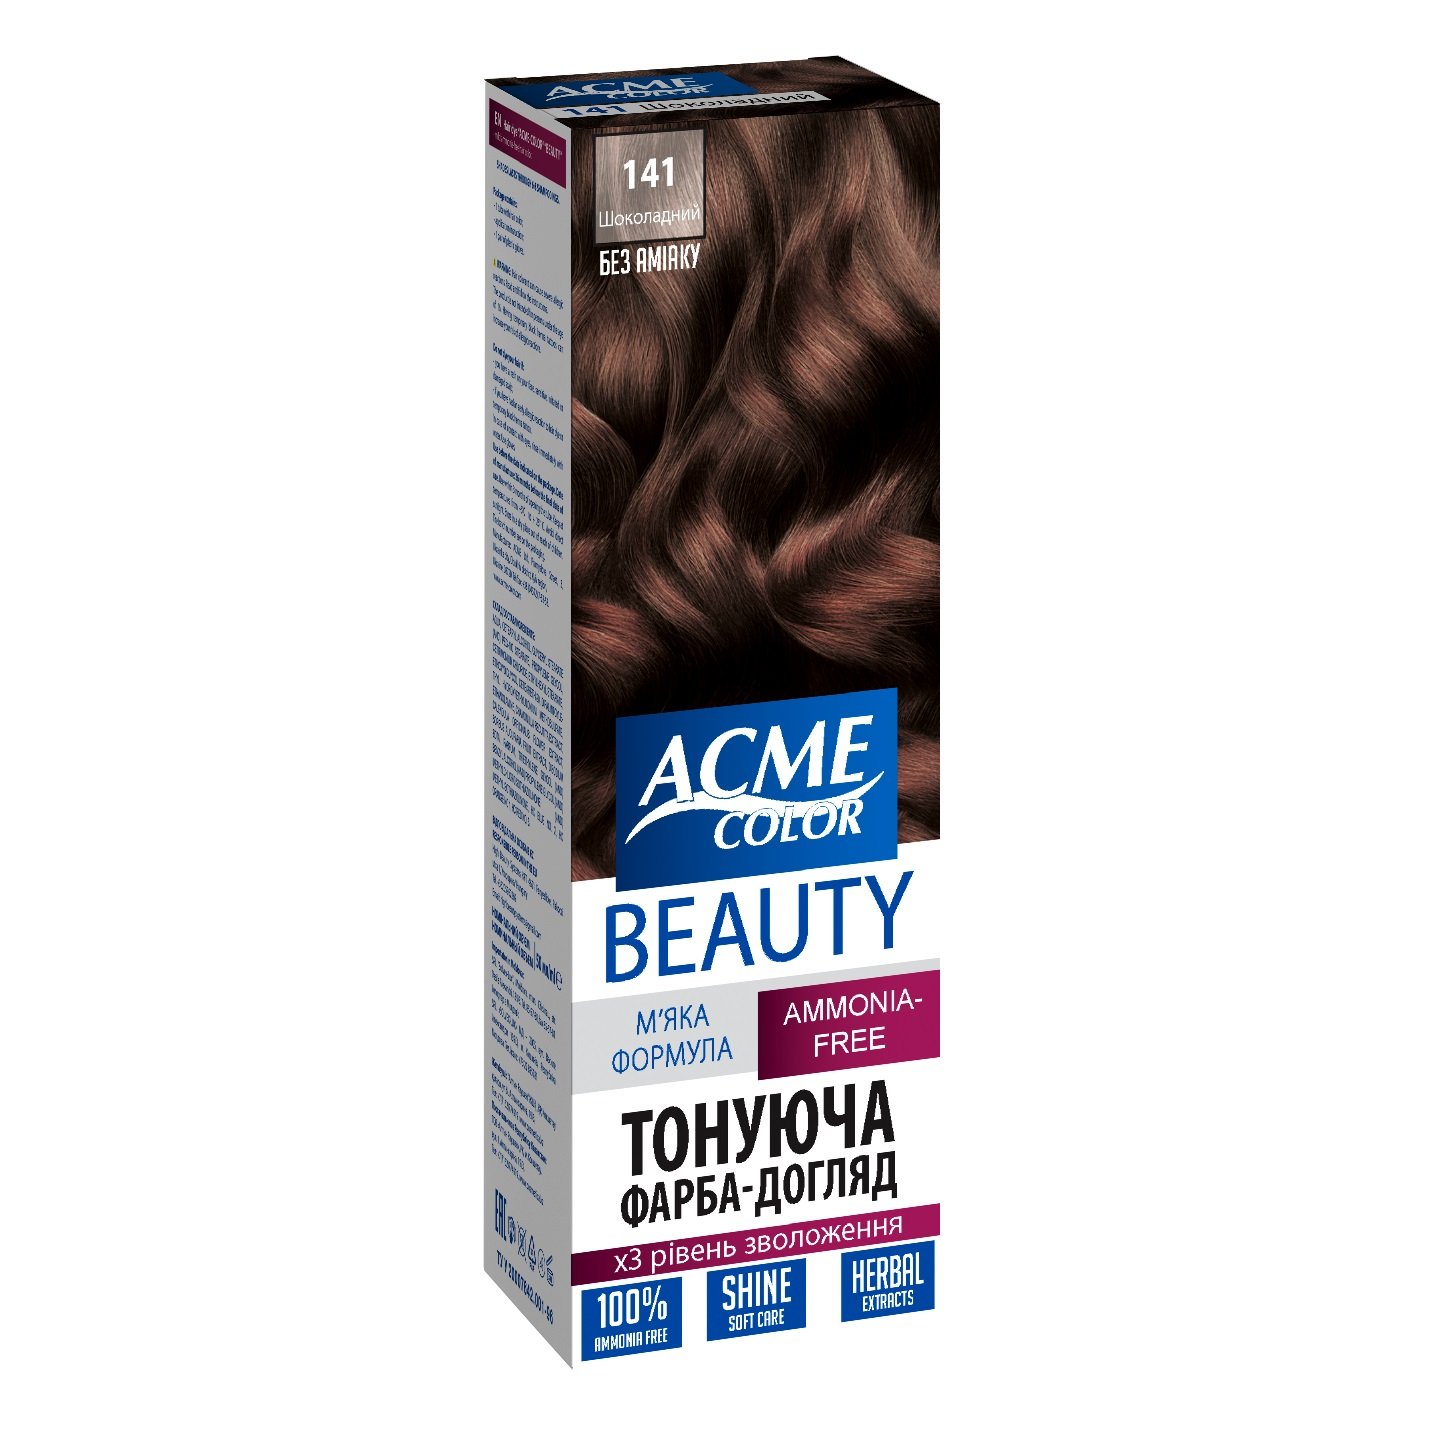 Гель-краска для волос Acme-color Beauty, оттенок 141 (Шоколадный), 69 г - фото 1